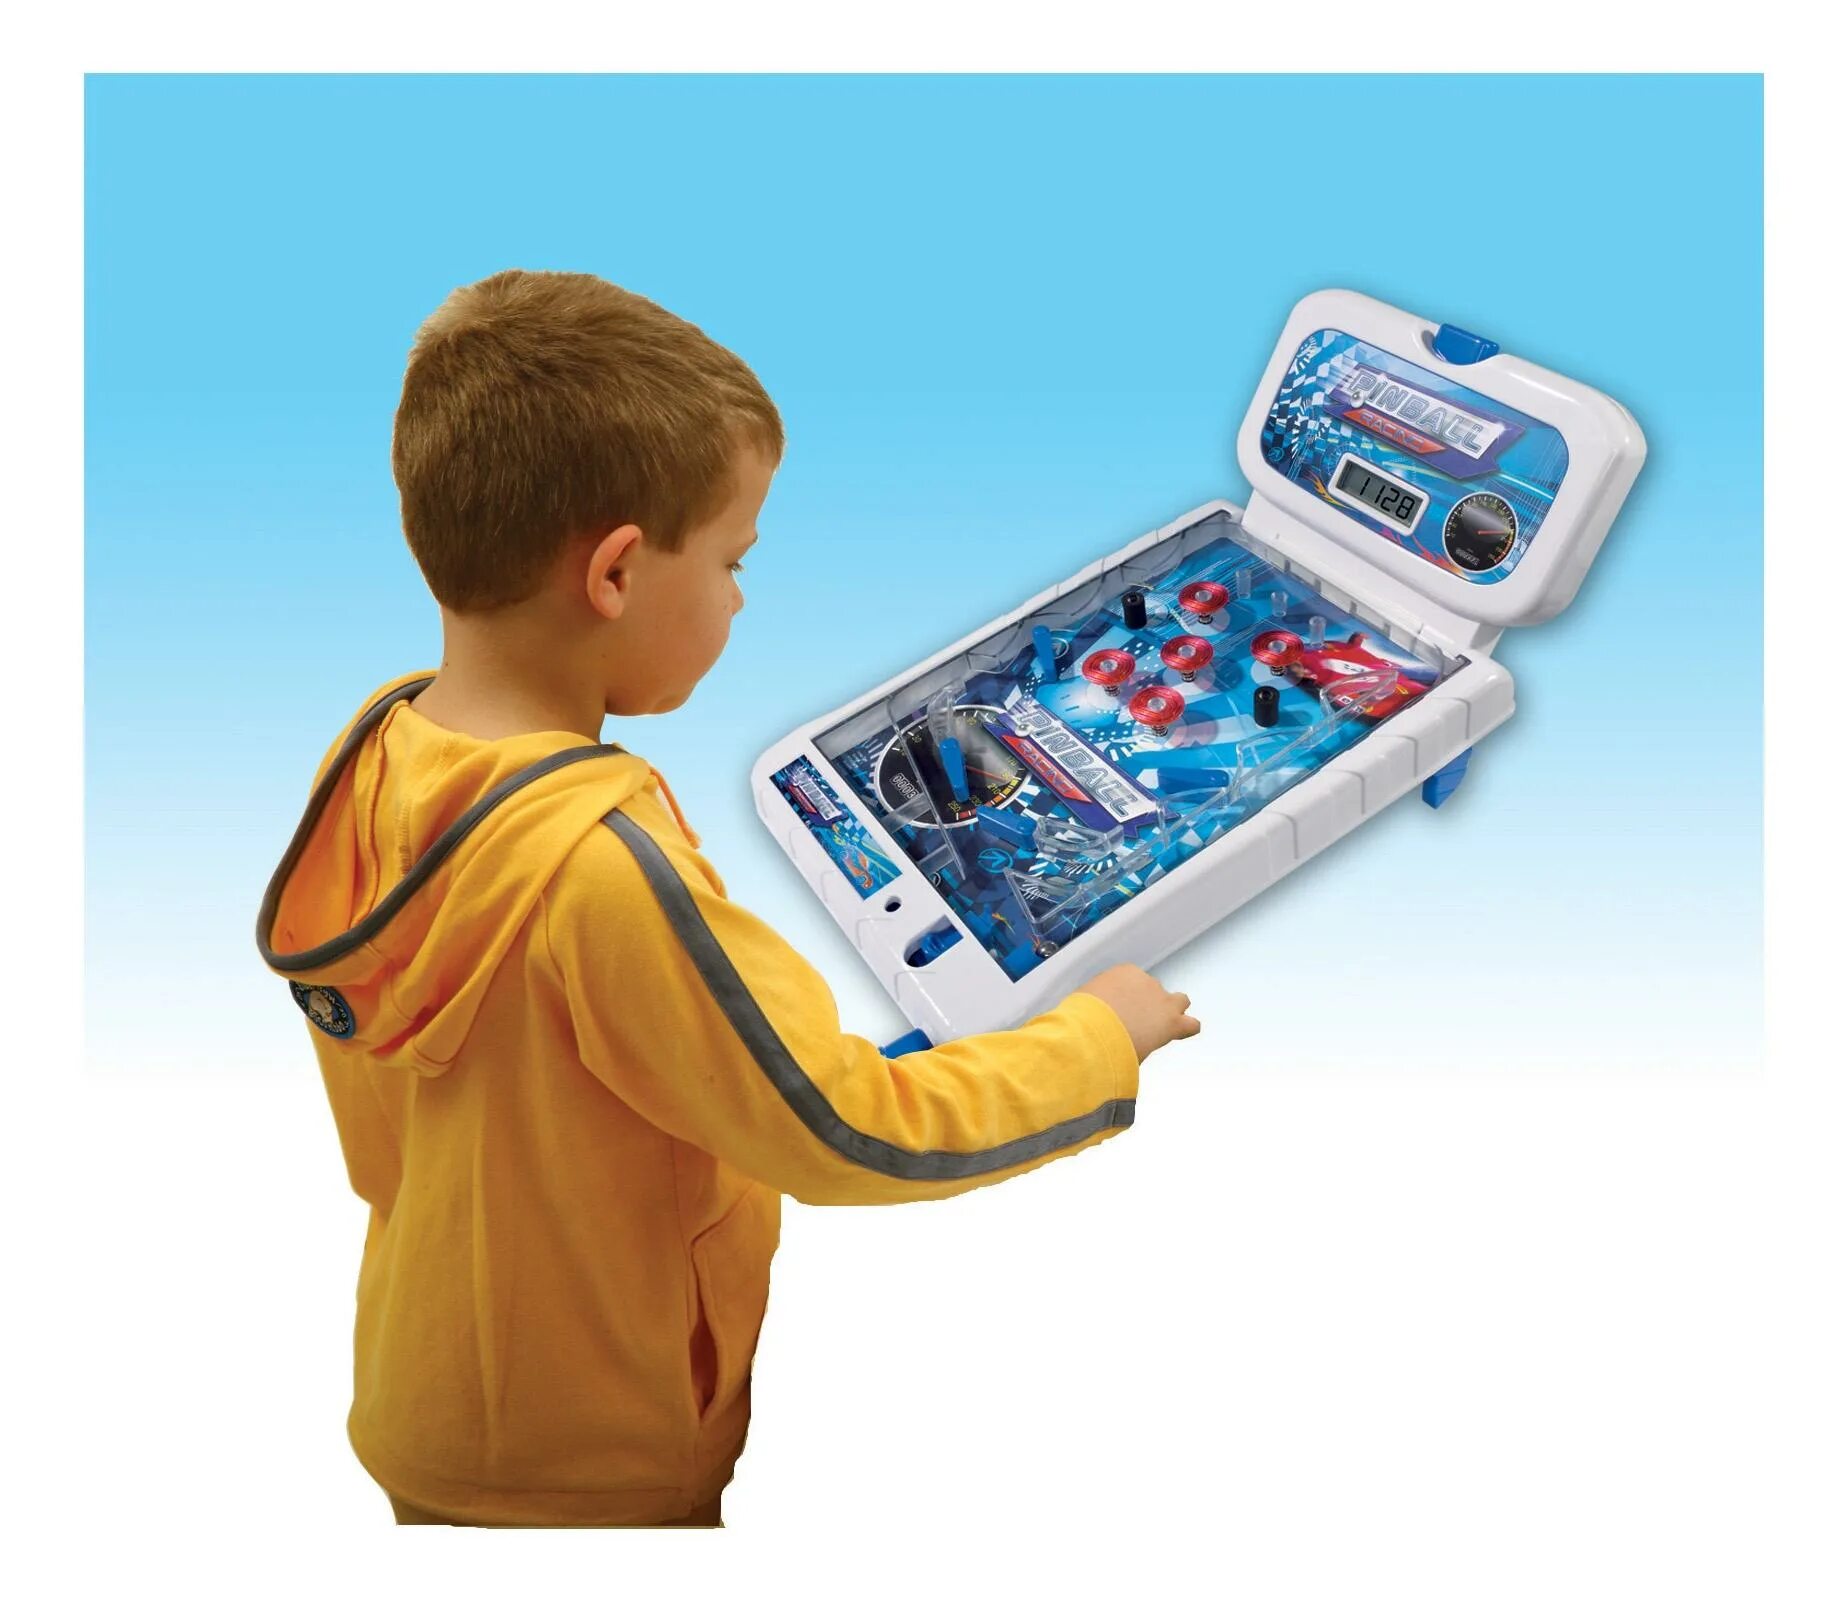 Пинбол Simba электрический. Simba пинбол электрический 3d. Интересные игрушки для мальчиков. Необычные игрушки для мальчиков. Игру через игрушки